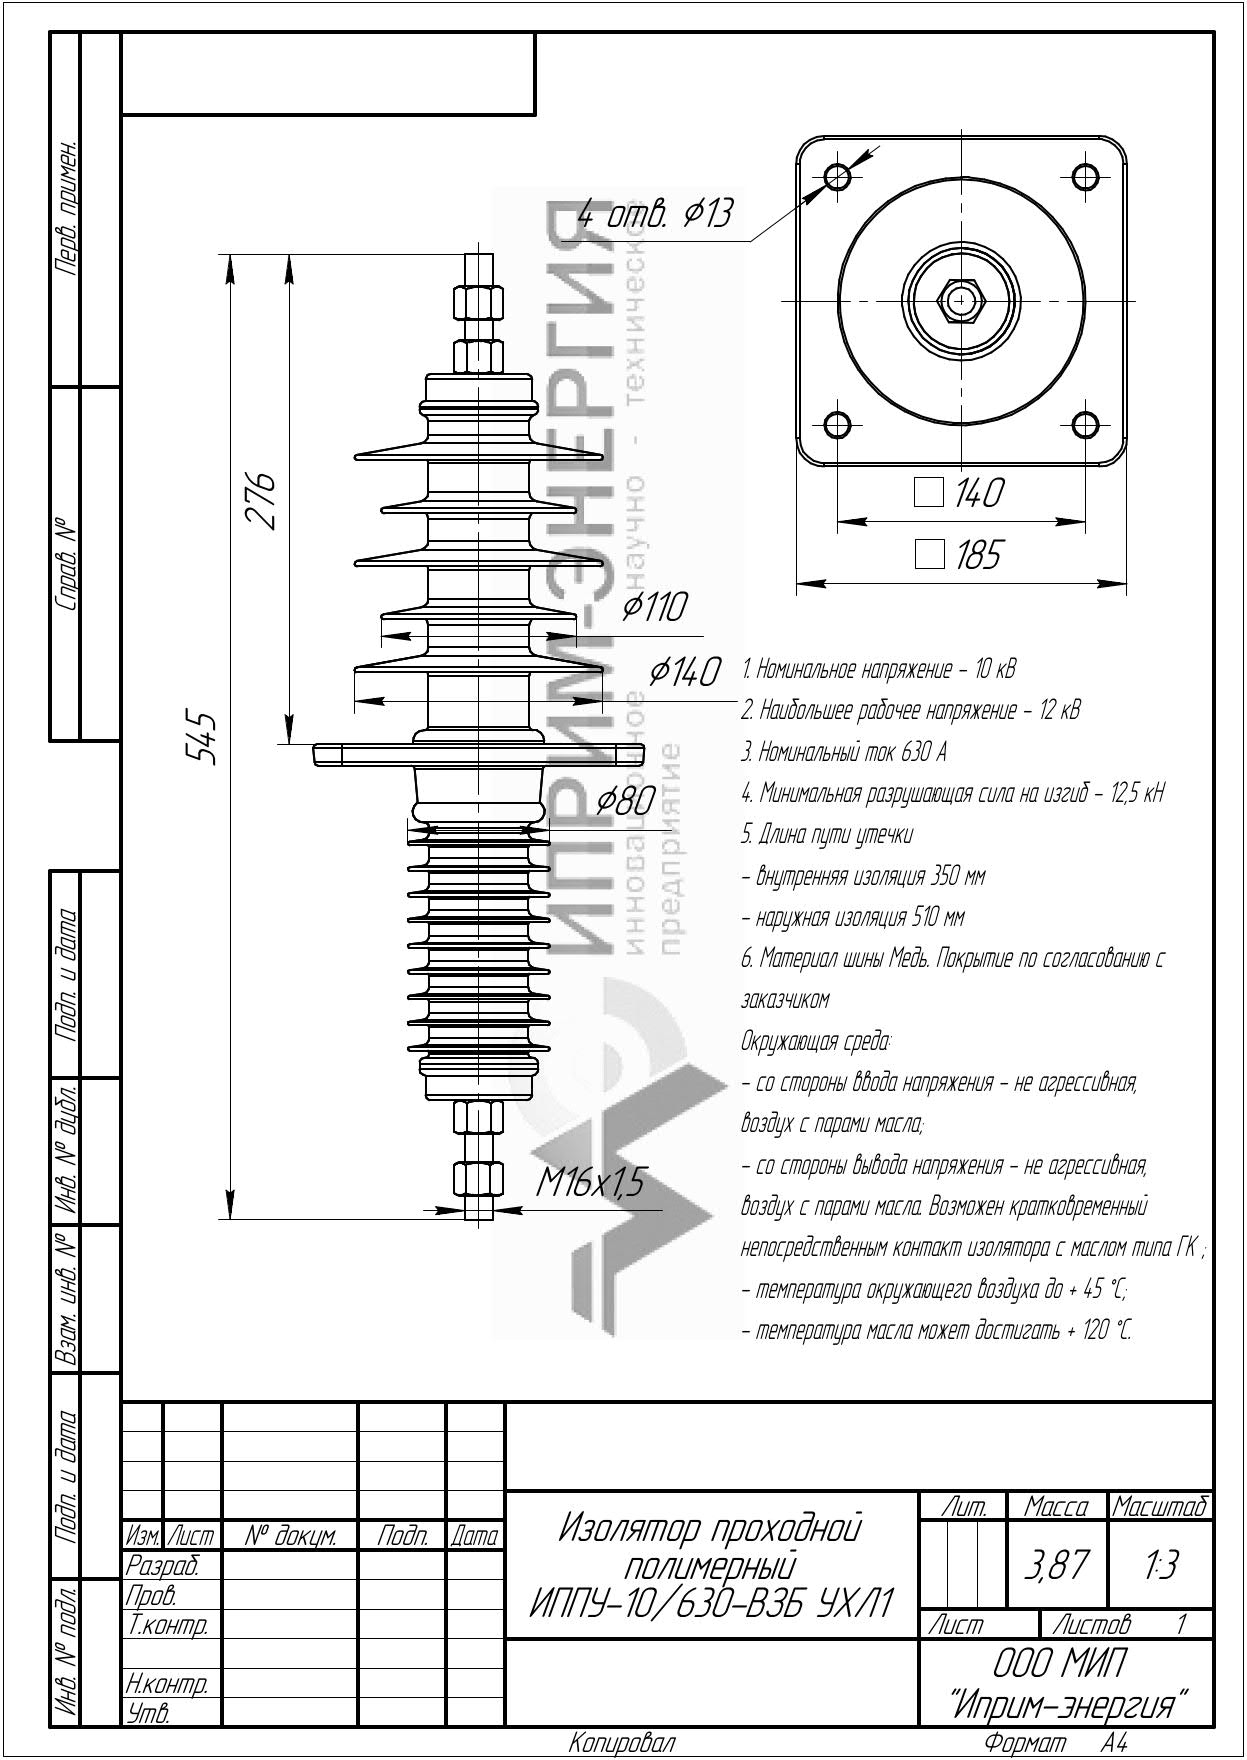 Изолятор проходной полимерный ИППУ-10/630-ВЗБ УХЛ1 чертеж